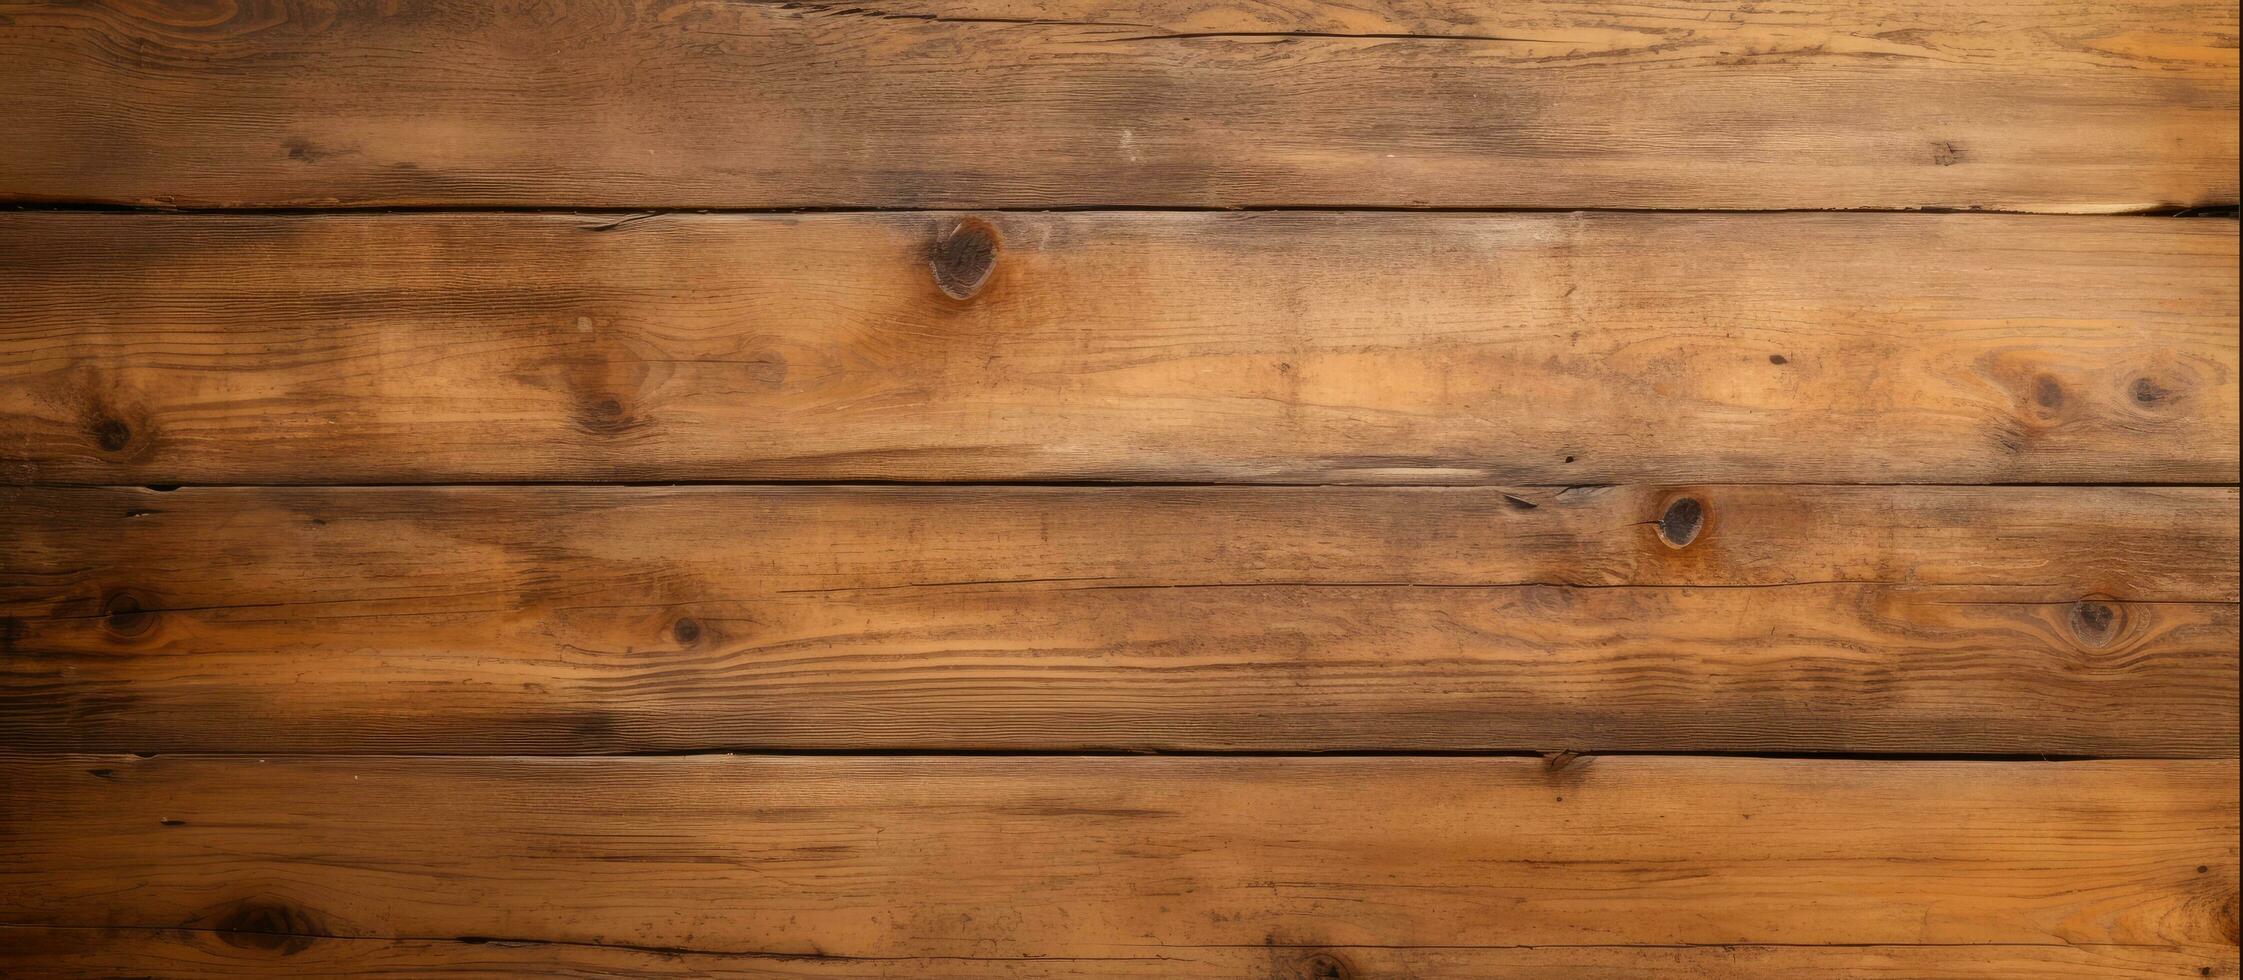 structuur van de oud bruin houten tafel verdieping foto